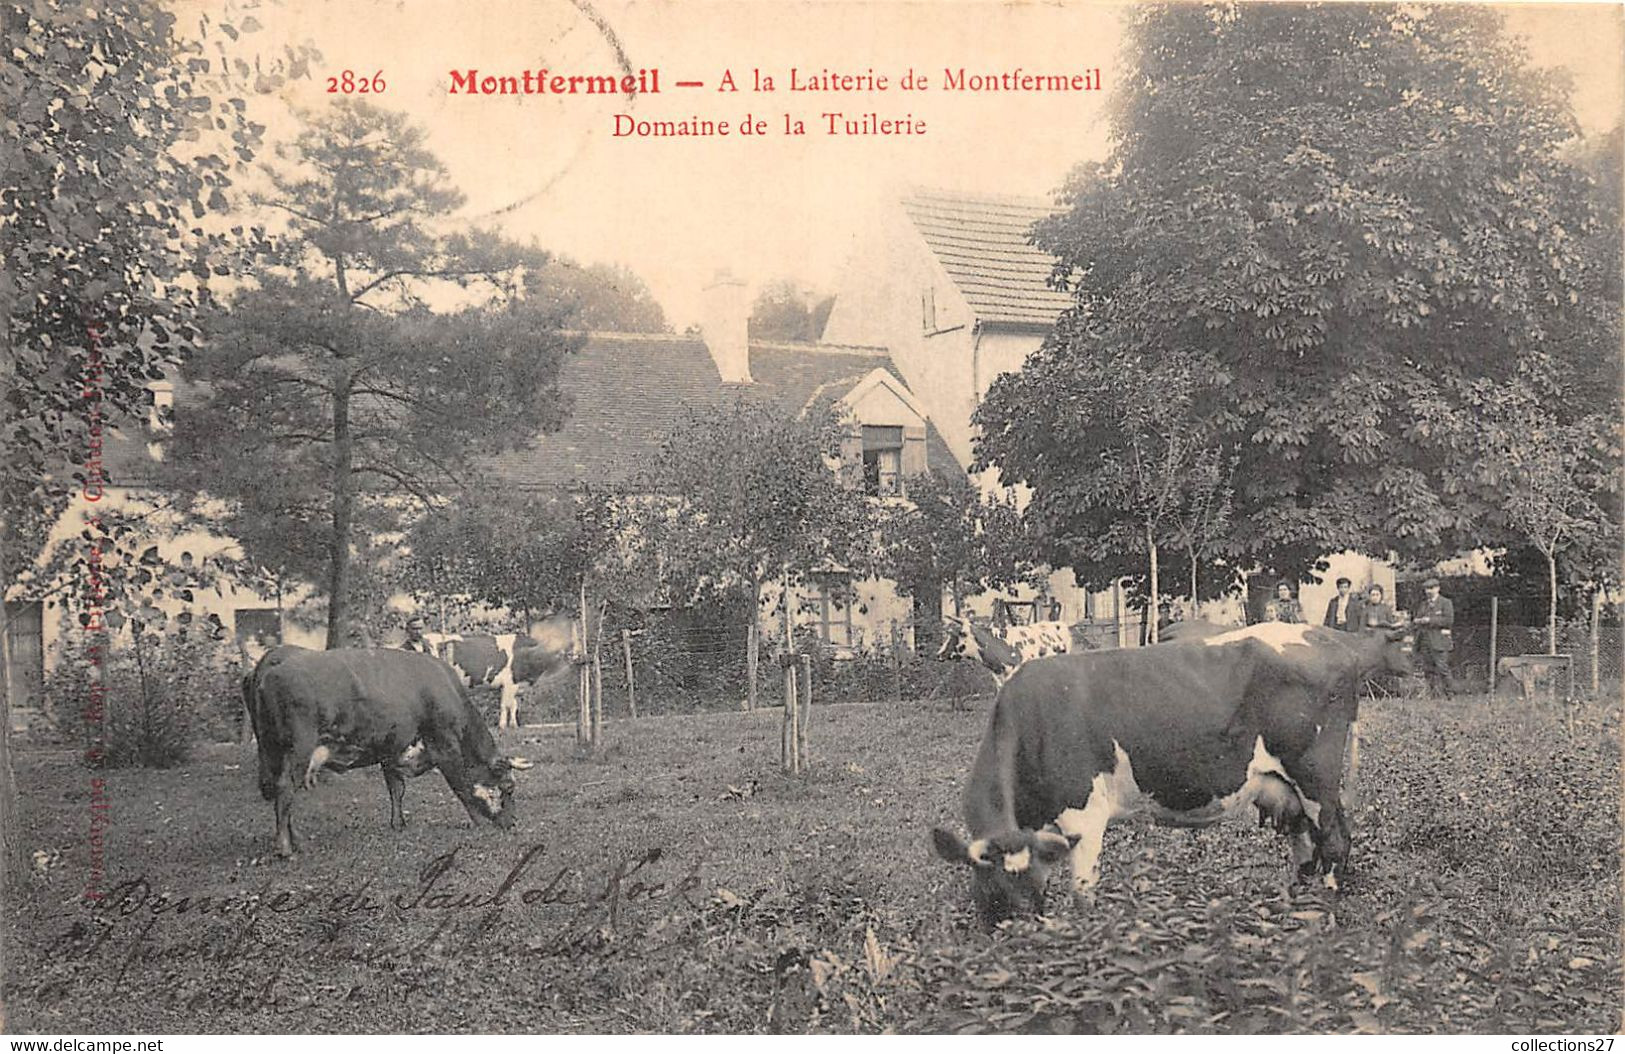 93-MONTFERMEIL- A LA LAITERIE DE MONTFERMEIL, DOMAINE DE LA TUILERIE - Montfermeil